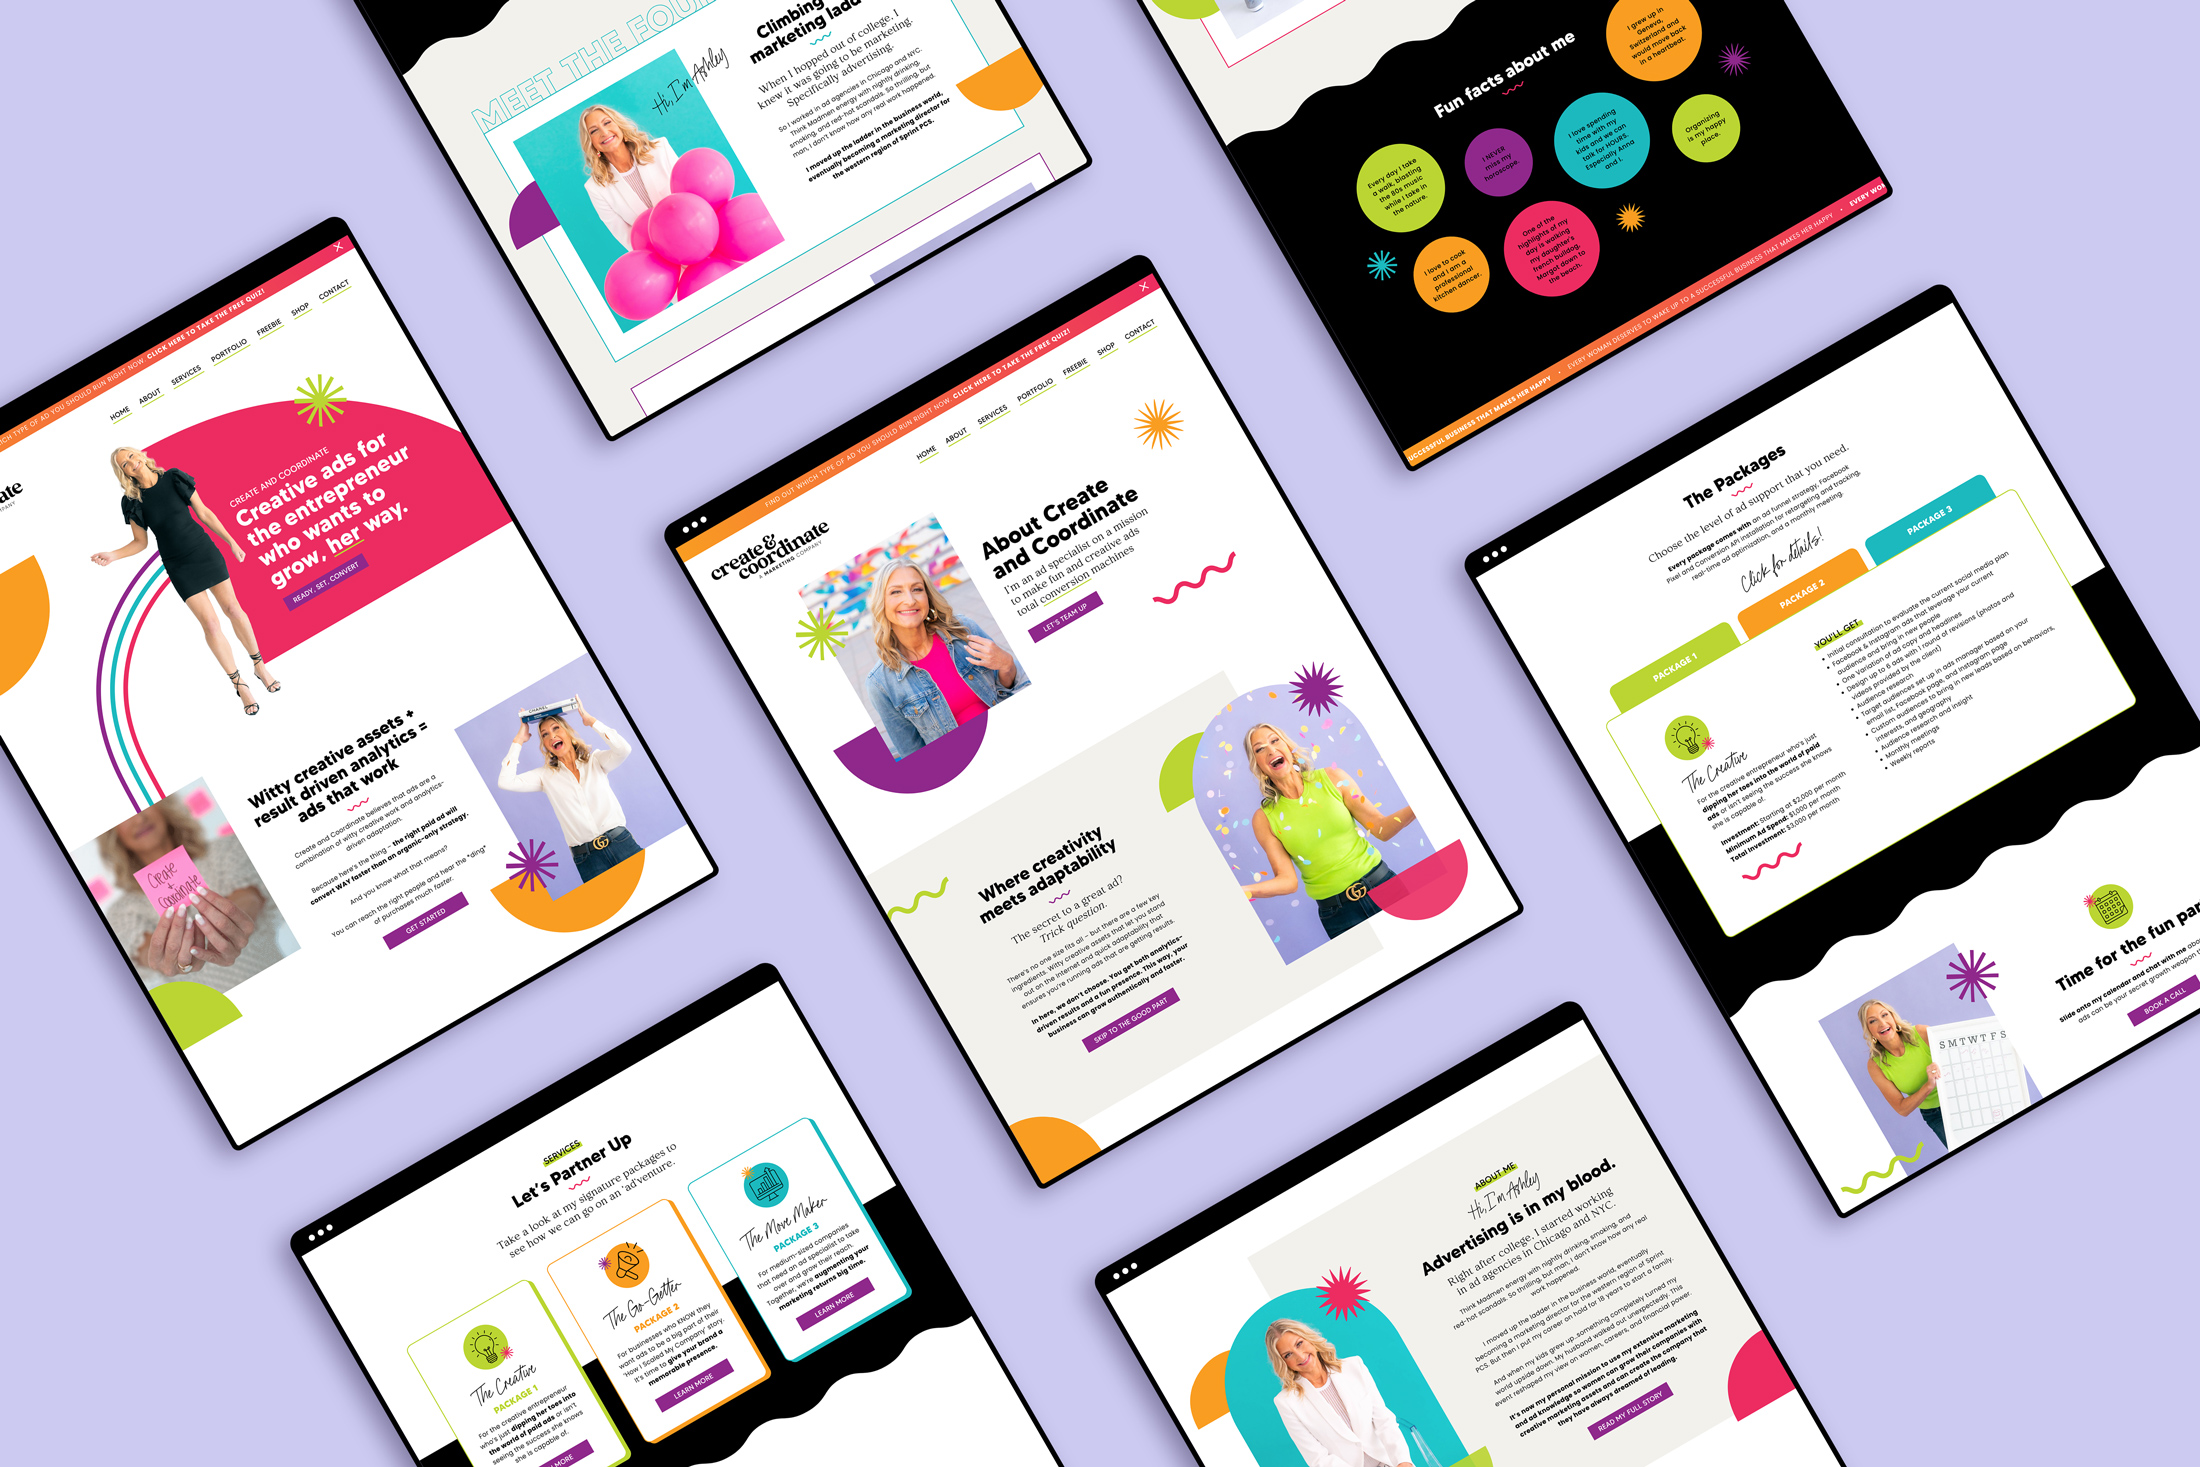 Showit Website Designs for a Marketing Entrepreneur Mocked up on iPads